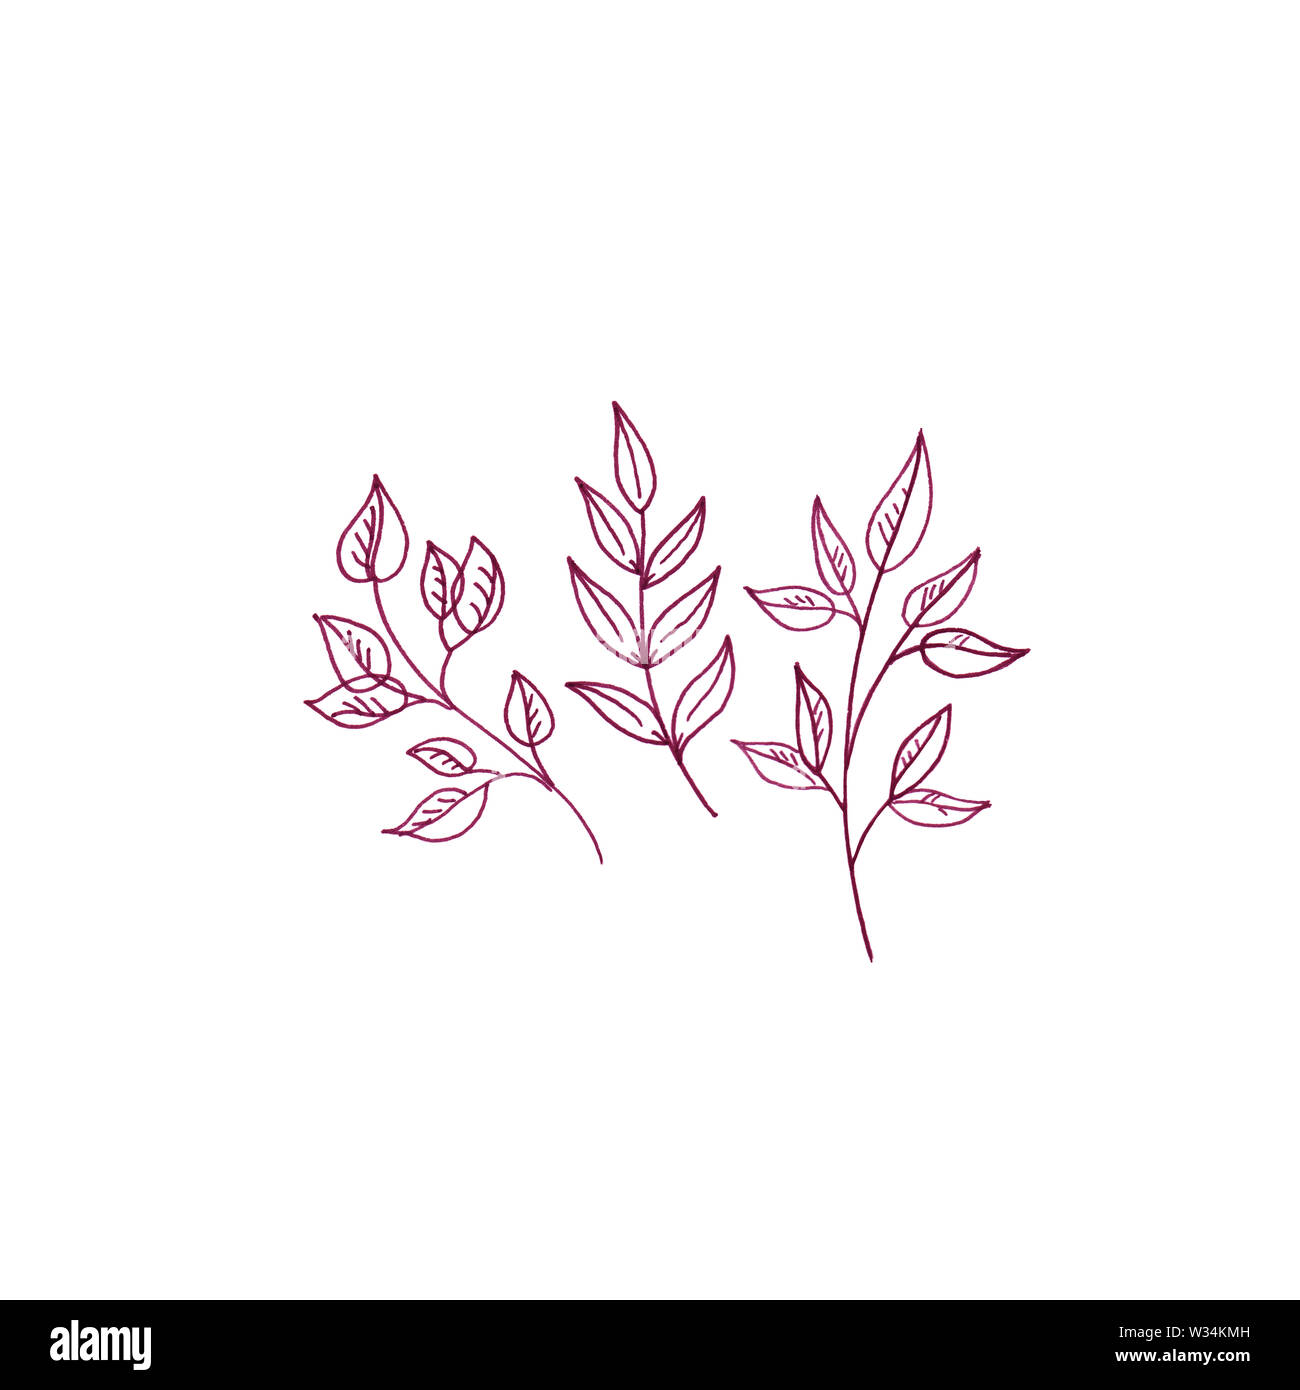 Alberi rossi carino illustrazione botanica, floreale illustrazione minimale del bouquet di autunno tre rami di alberi in stile rustico. Foto Stock